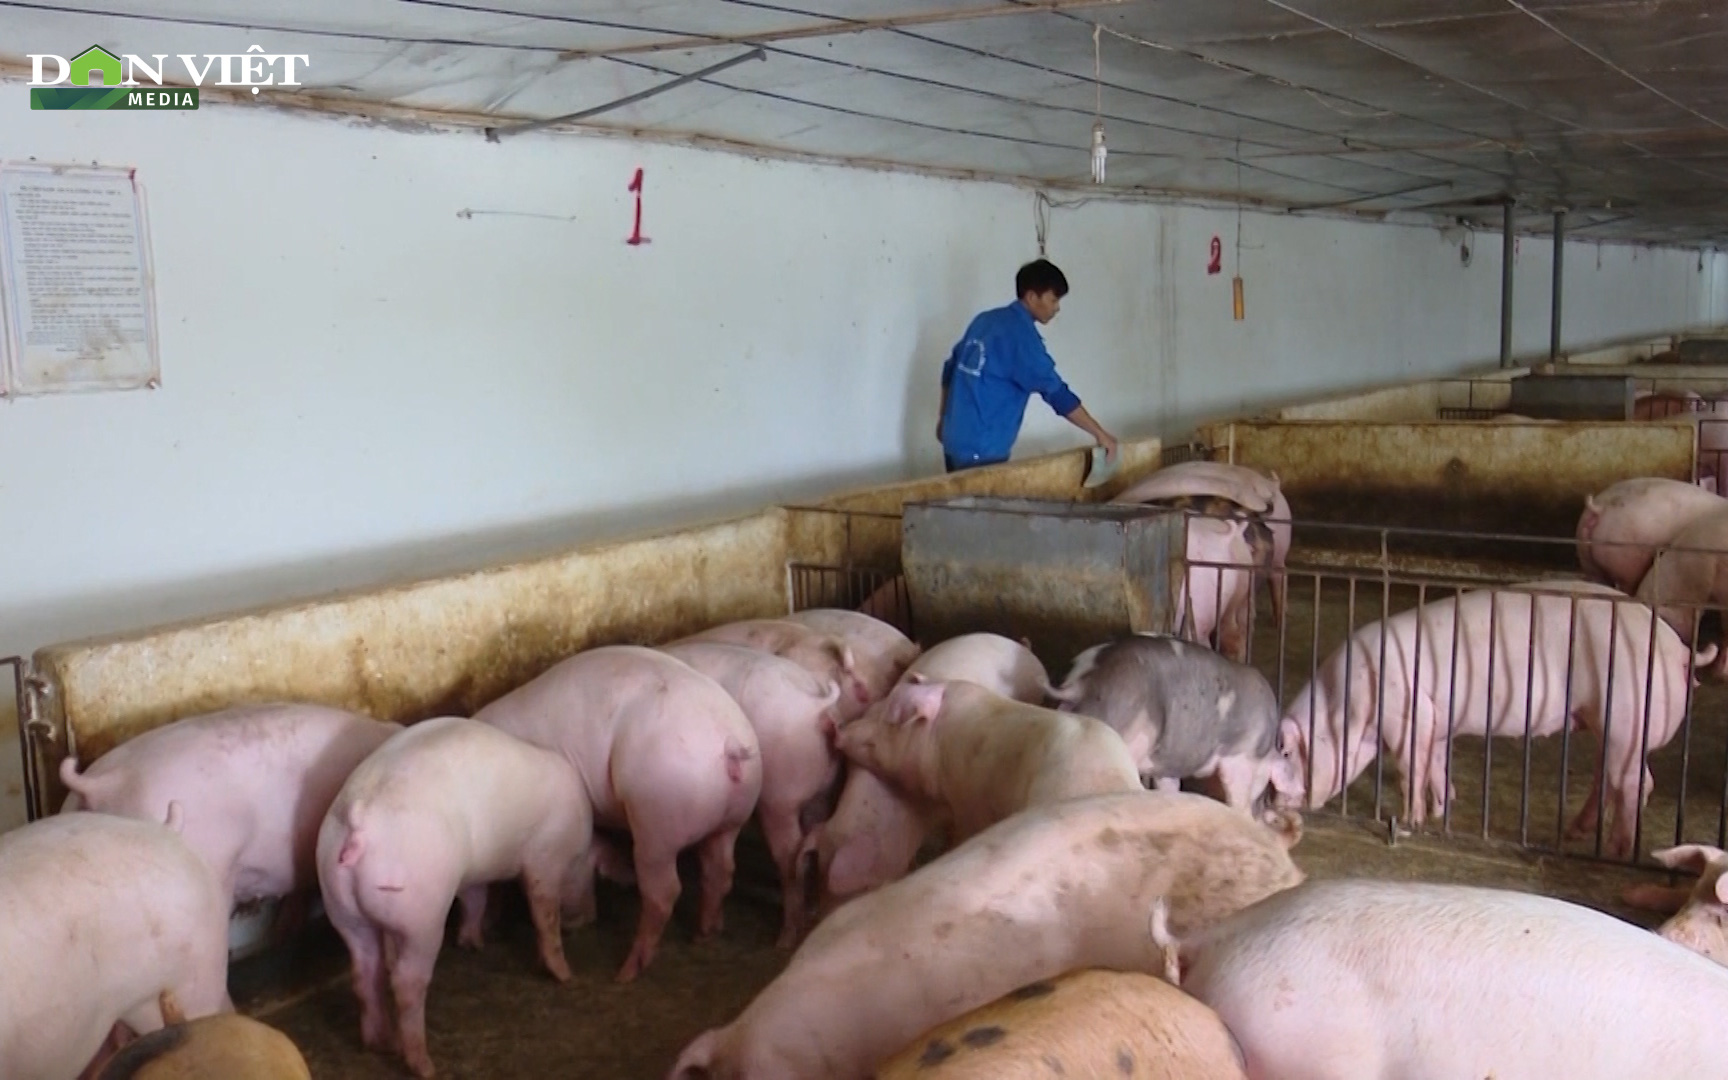 Gốc rễ giá thịt lợn giảm sâu: Người chăn nuôi chịu sức ép lớn trong tiêu thụ do dịch Covid-19